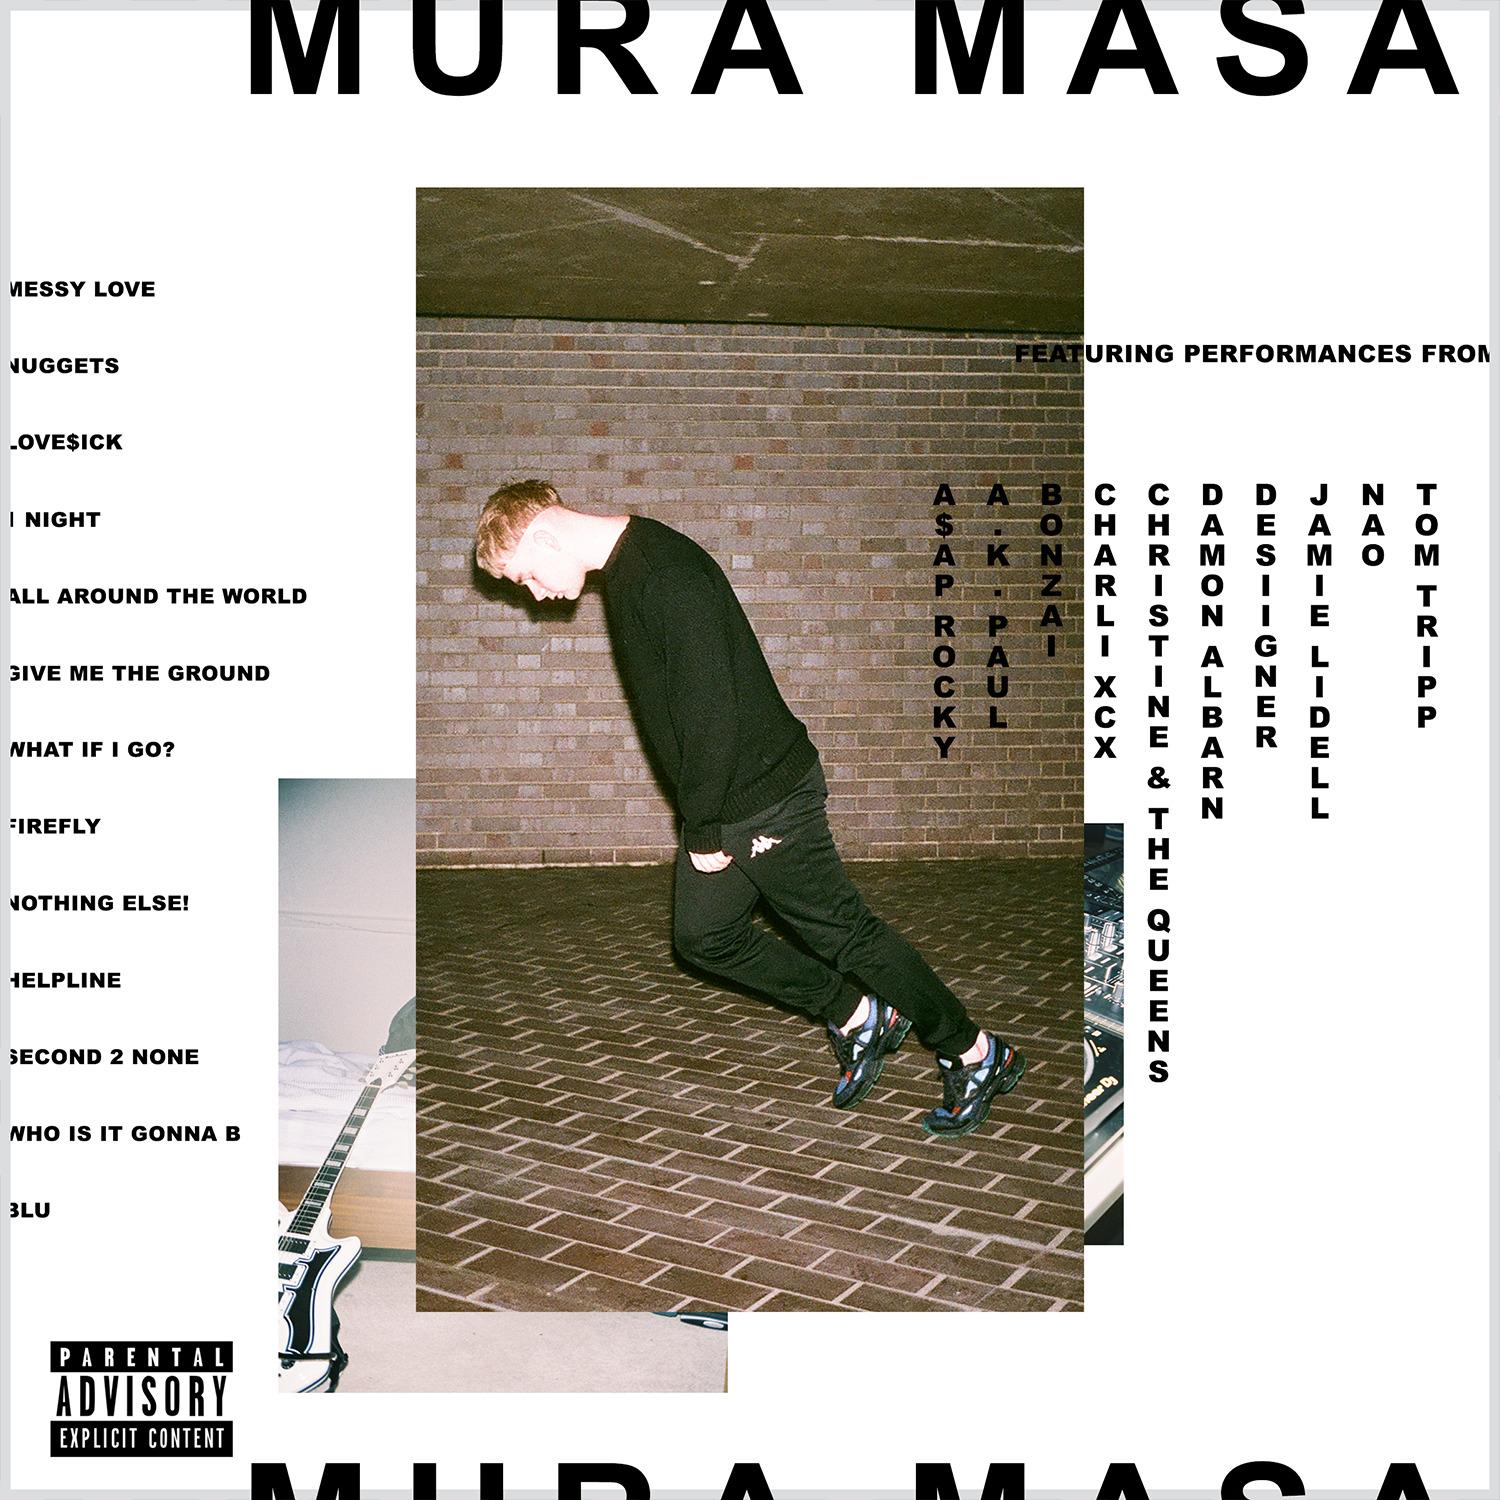 Artwork for Mura Masa's debut album